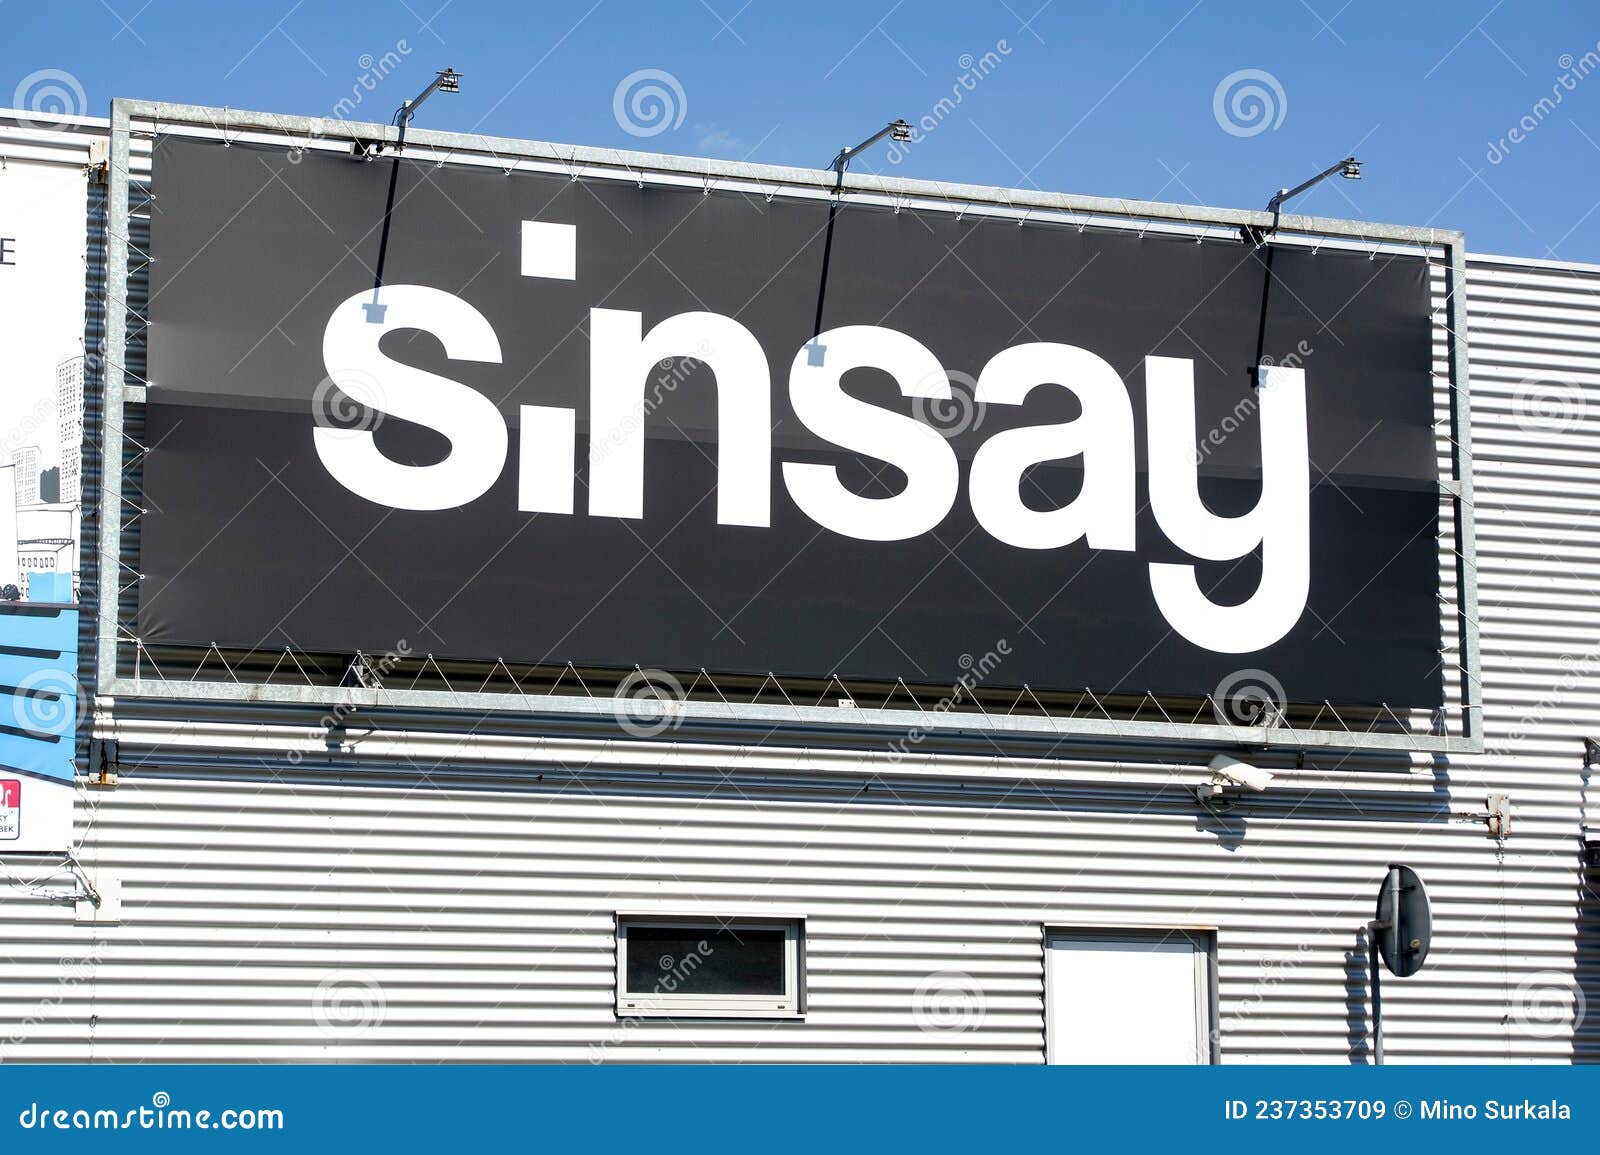 sinsay online shop